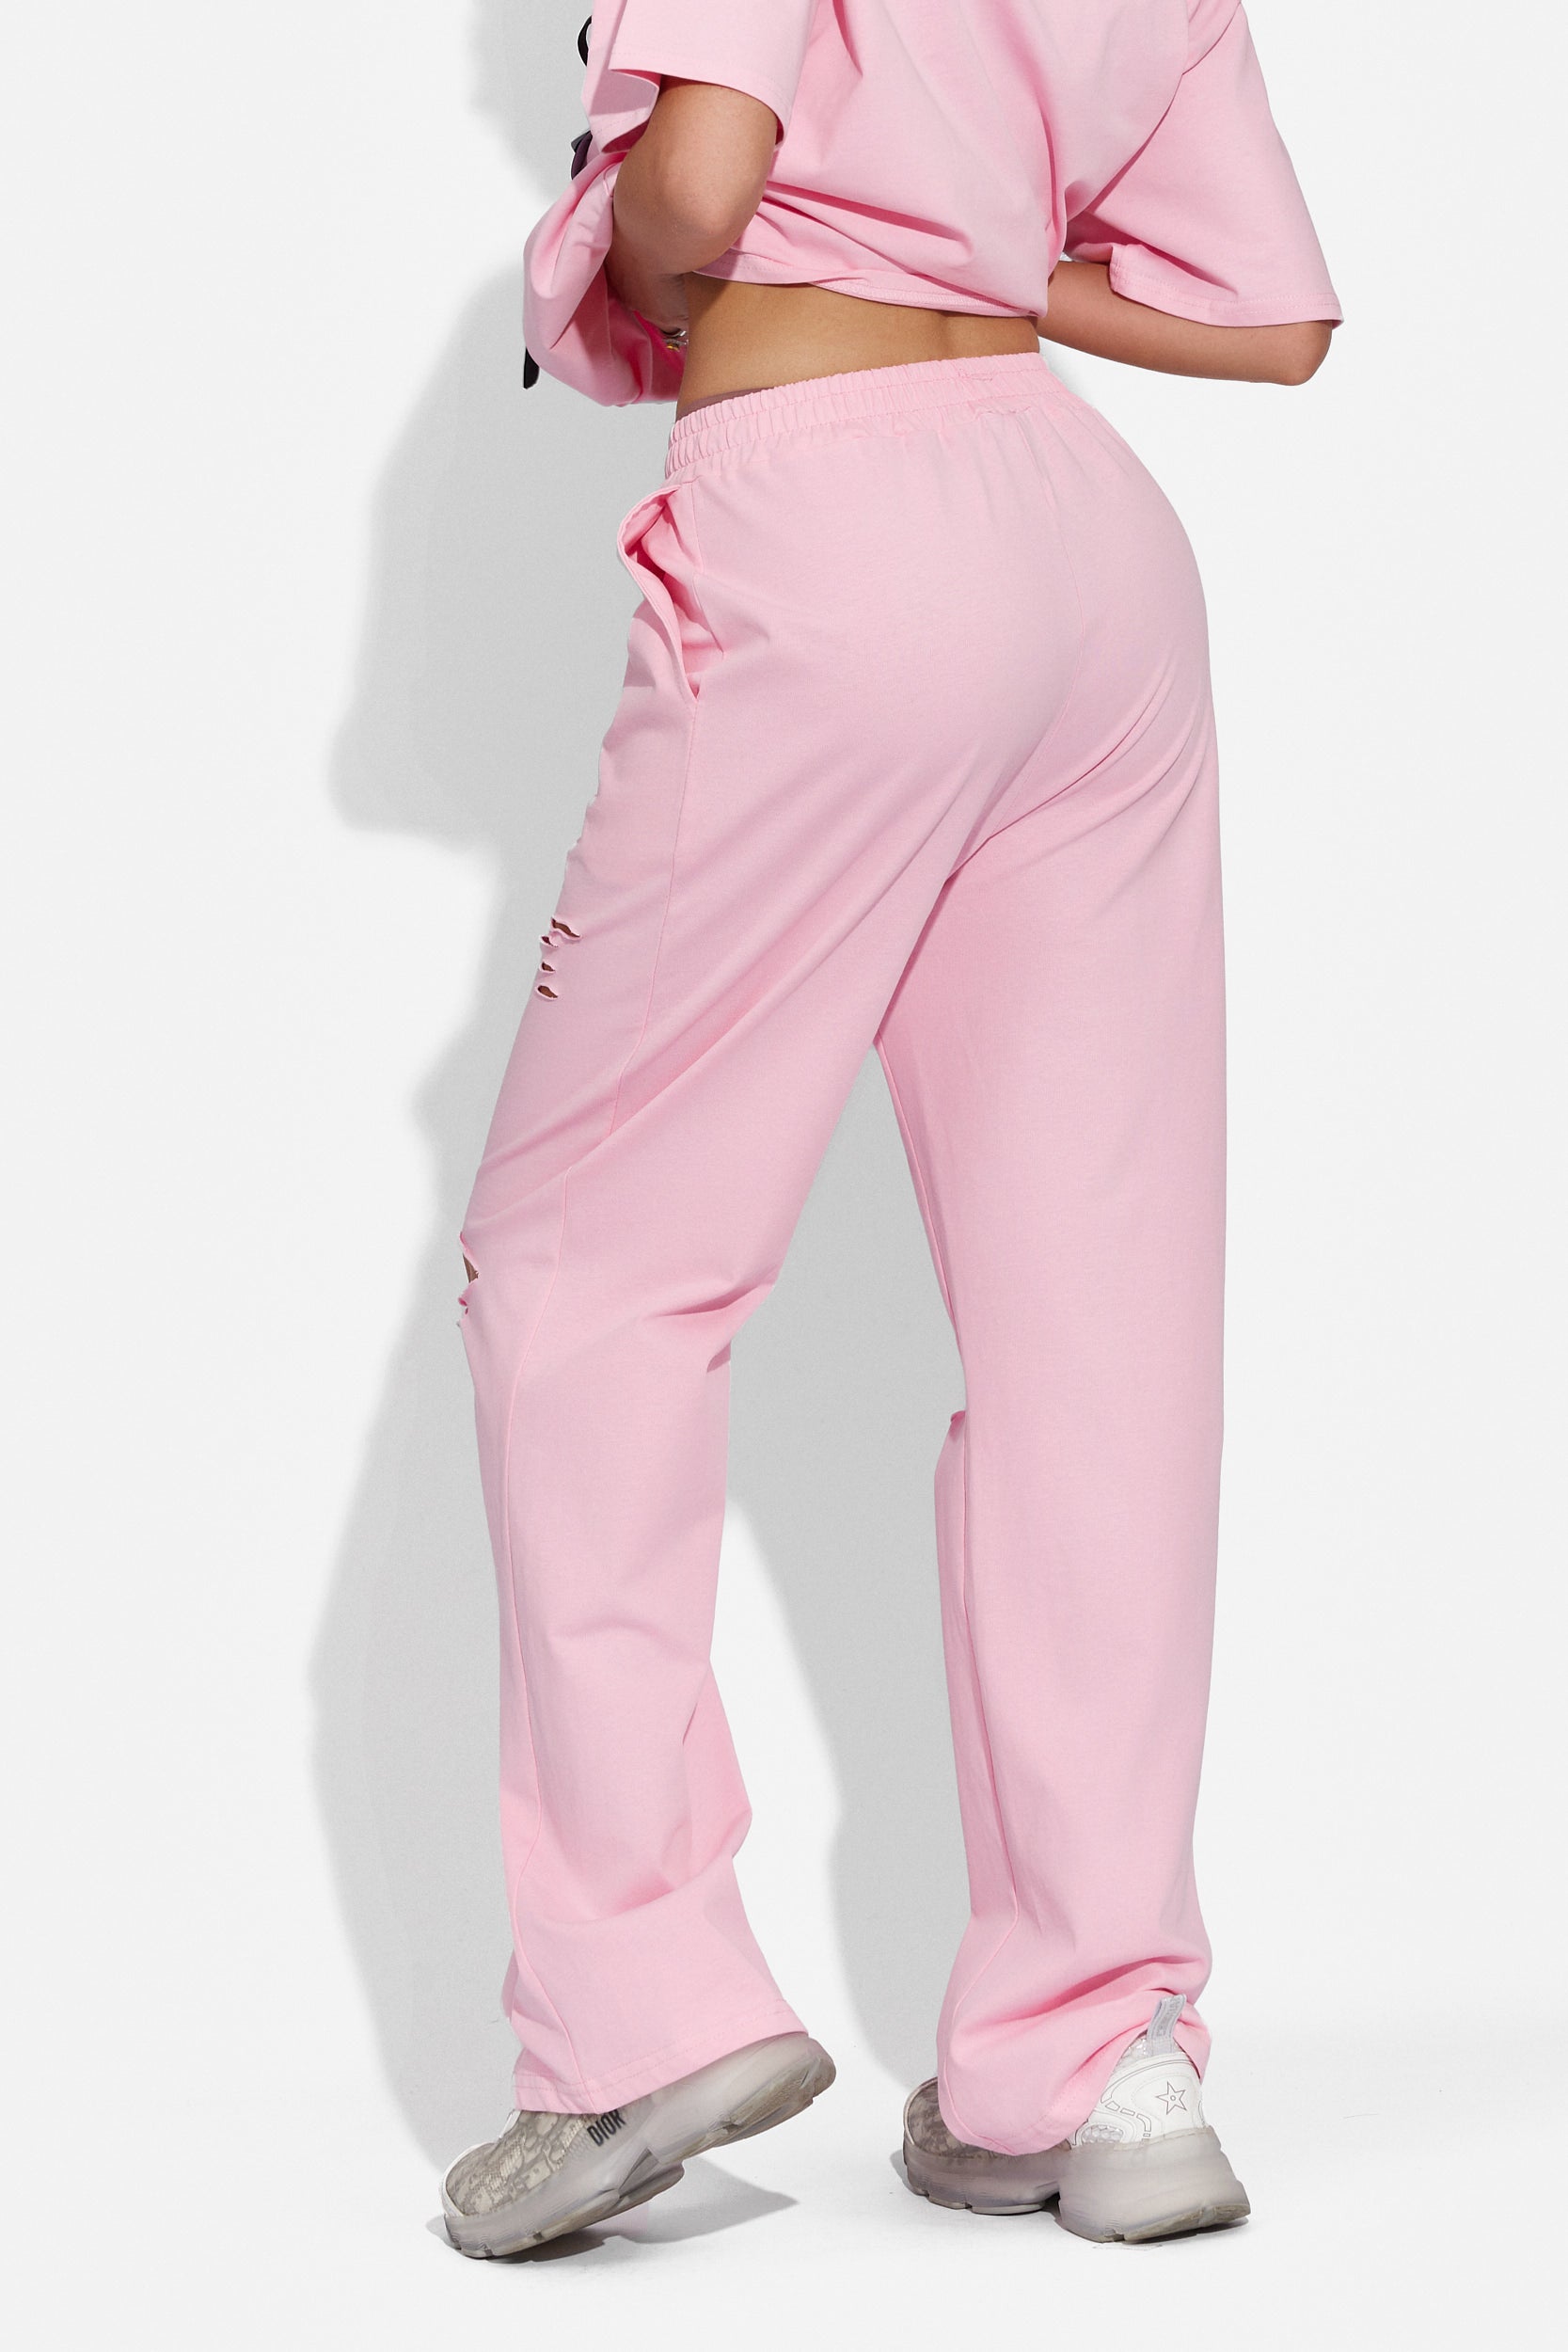 Lavile Bogas rózsaszín alkalmi női nadrág